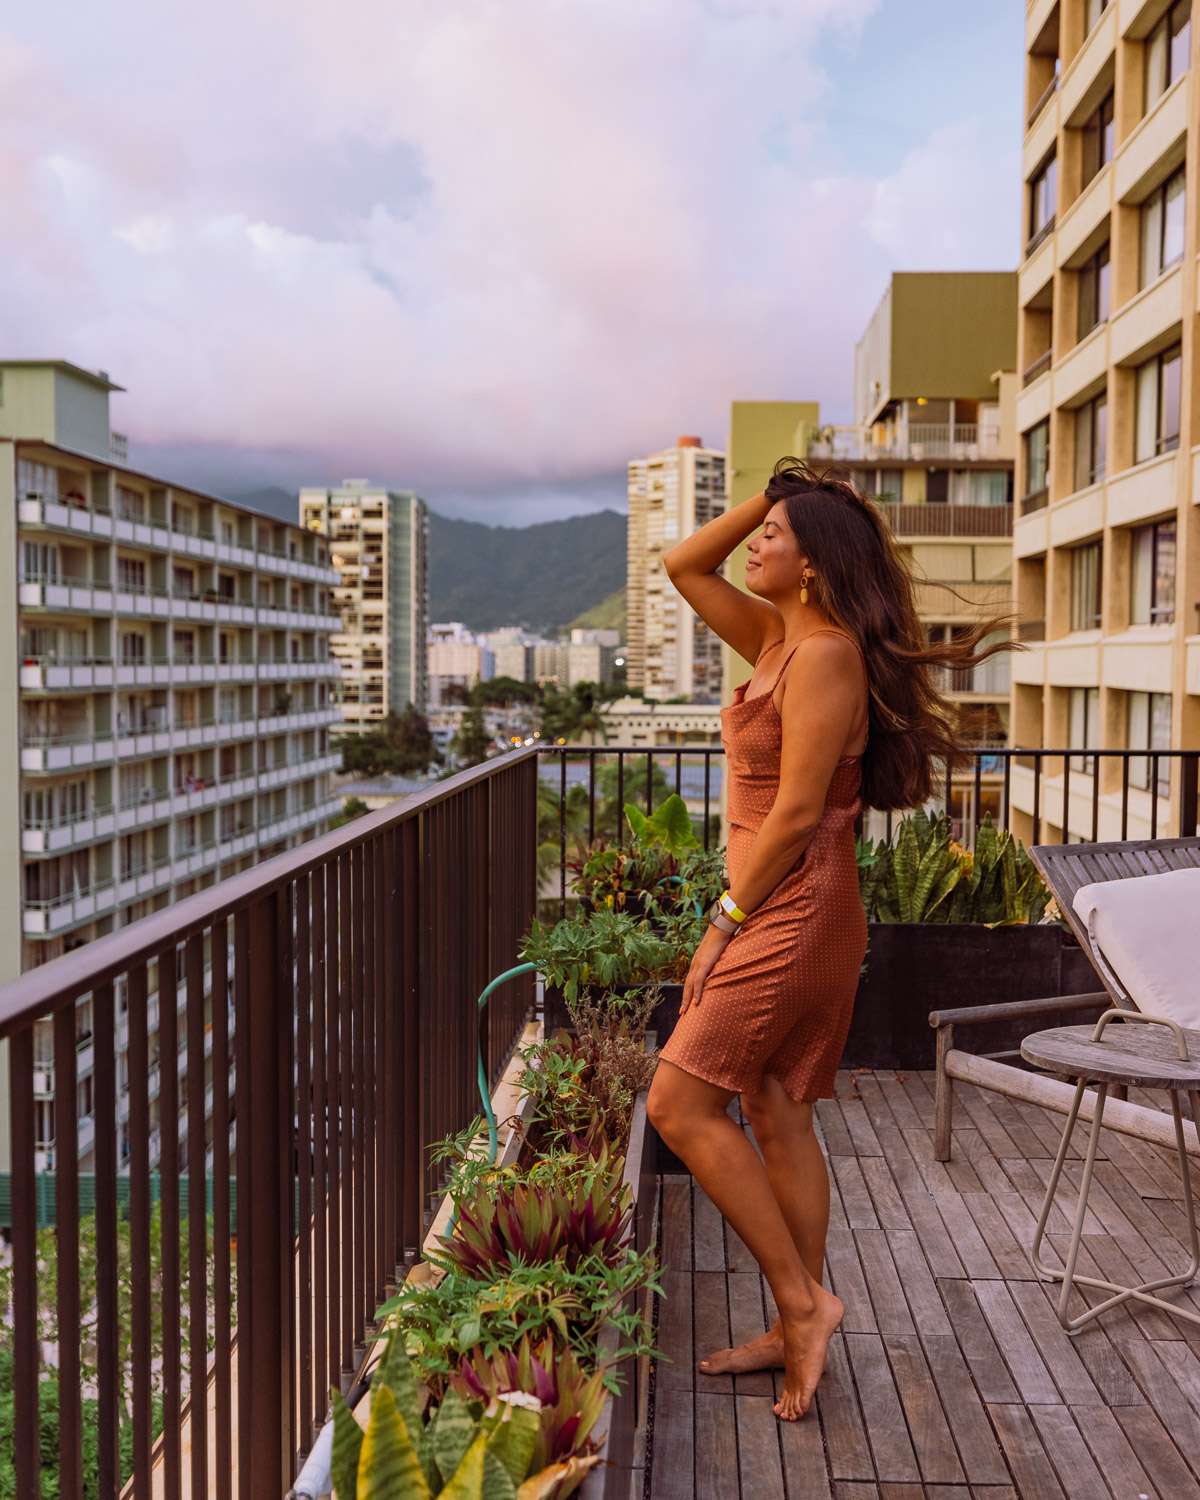 Rachel Off Duty: How to Spend 5 Days on Oahu - Waikiki